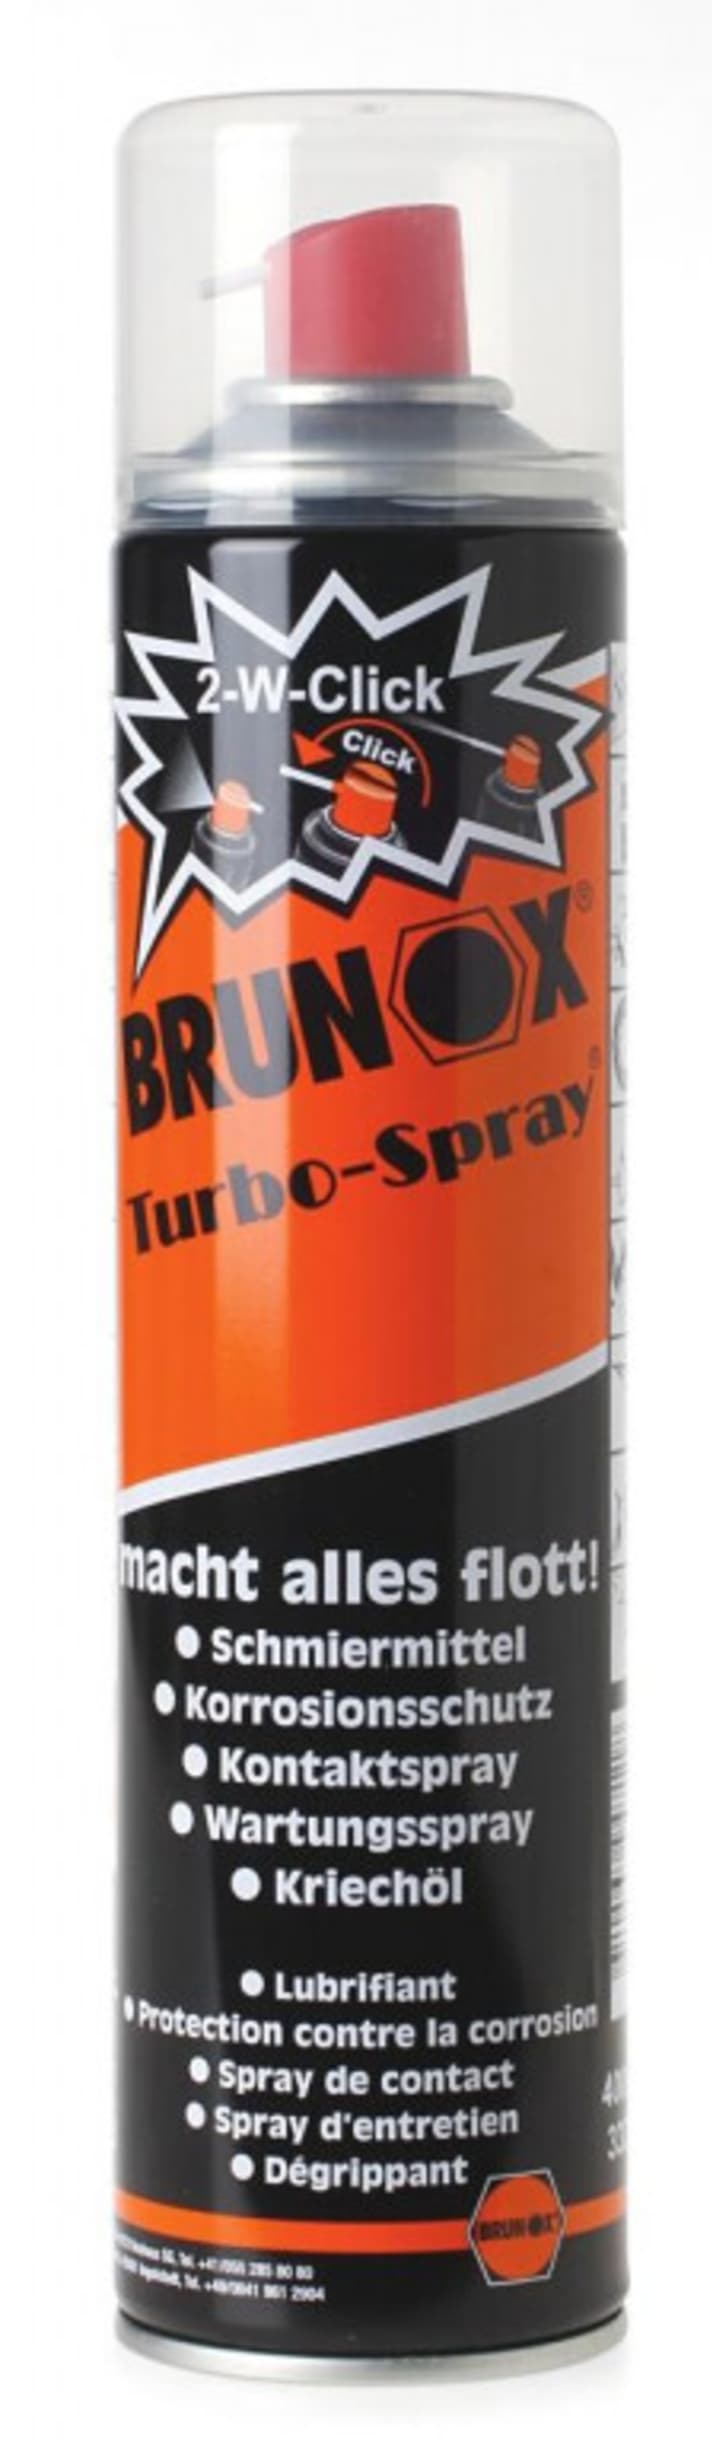   Das Turbo-Spray von Brunox kann man vor einer Fahrt im Matsch verwenden.